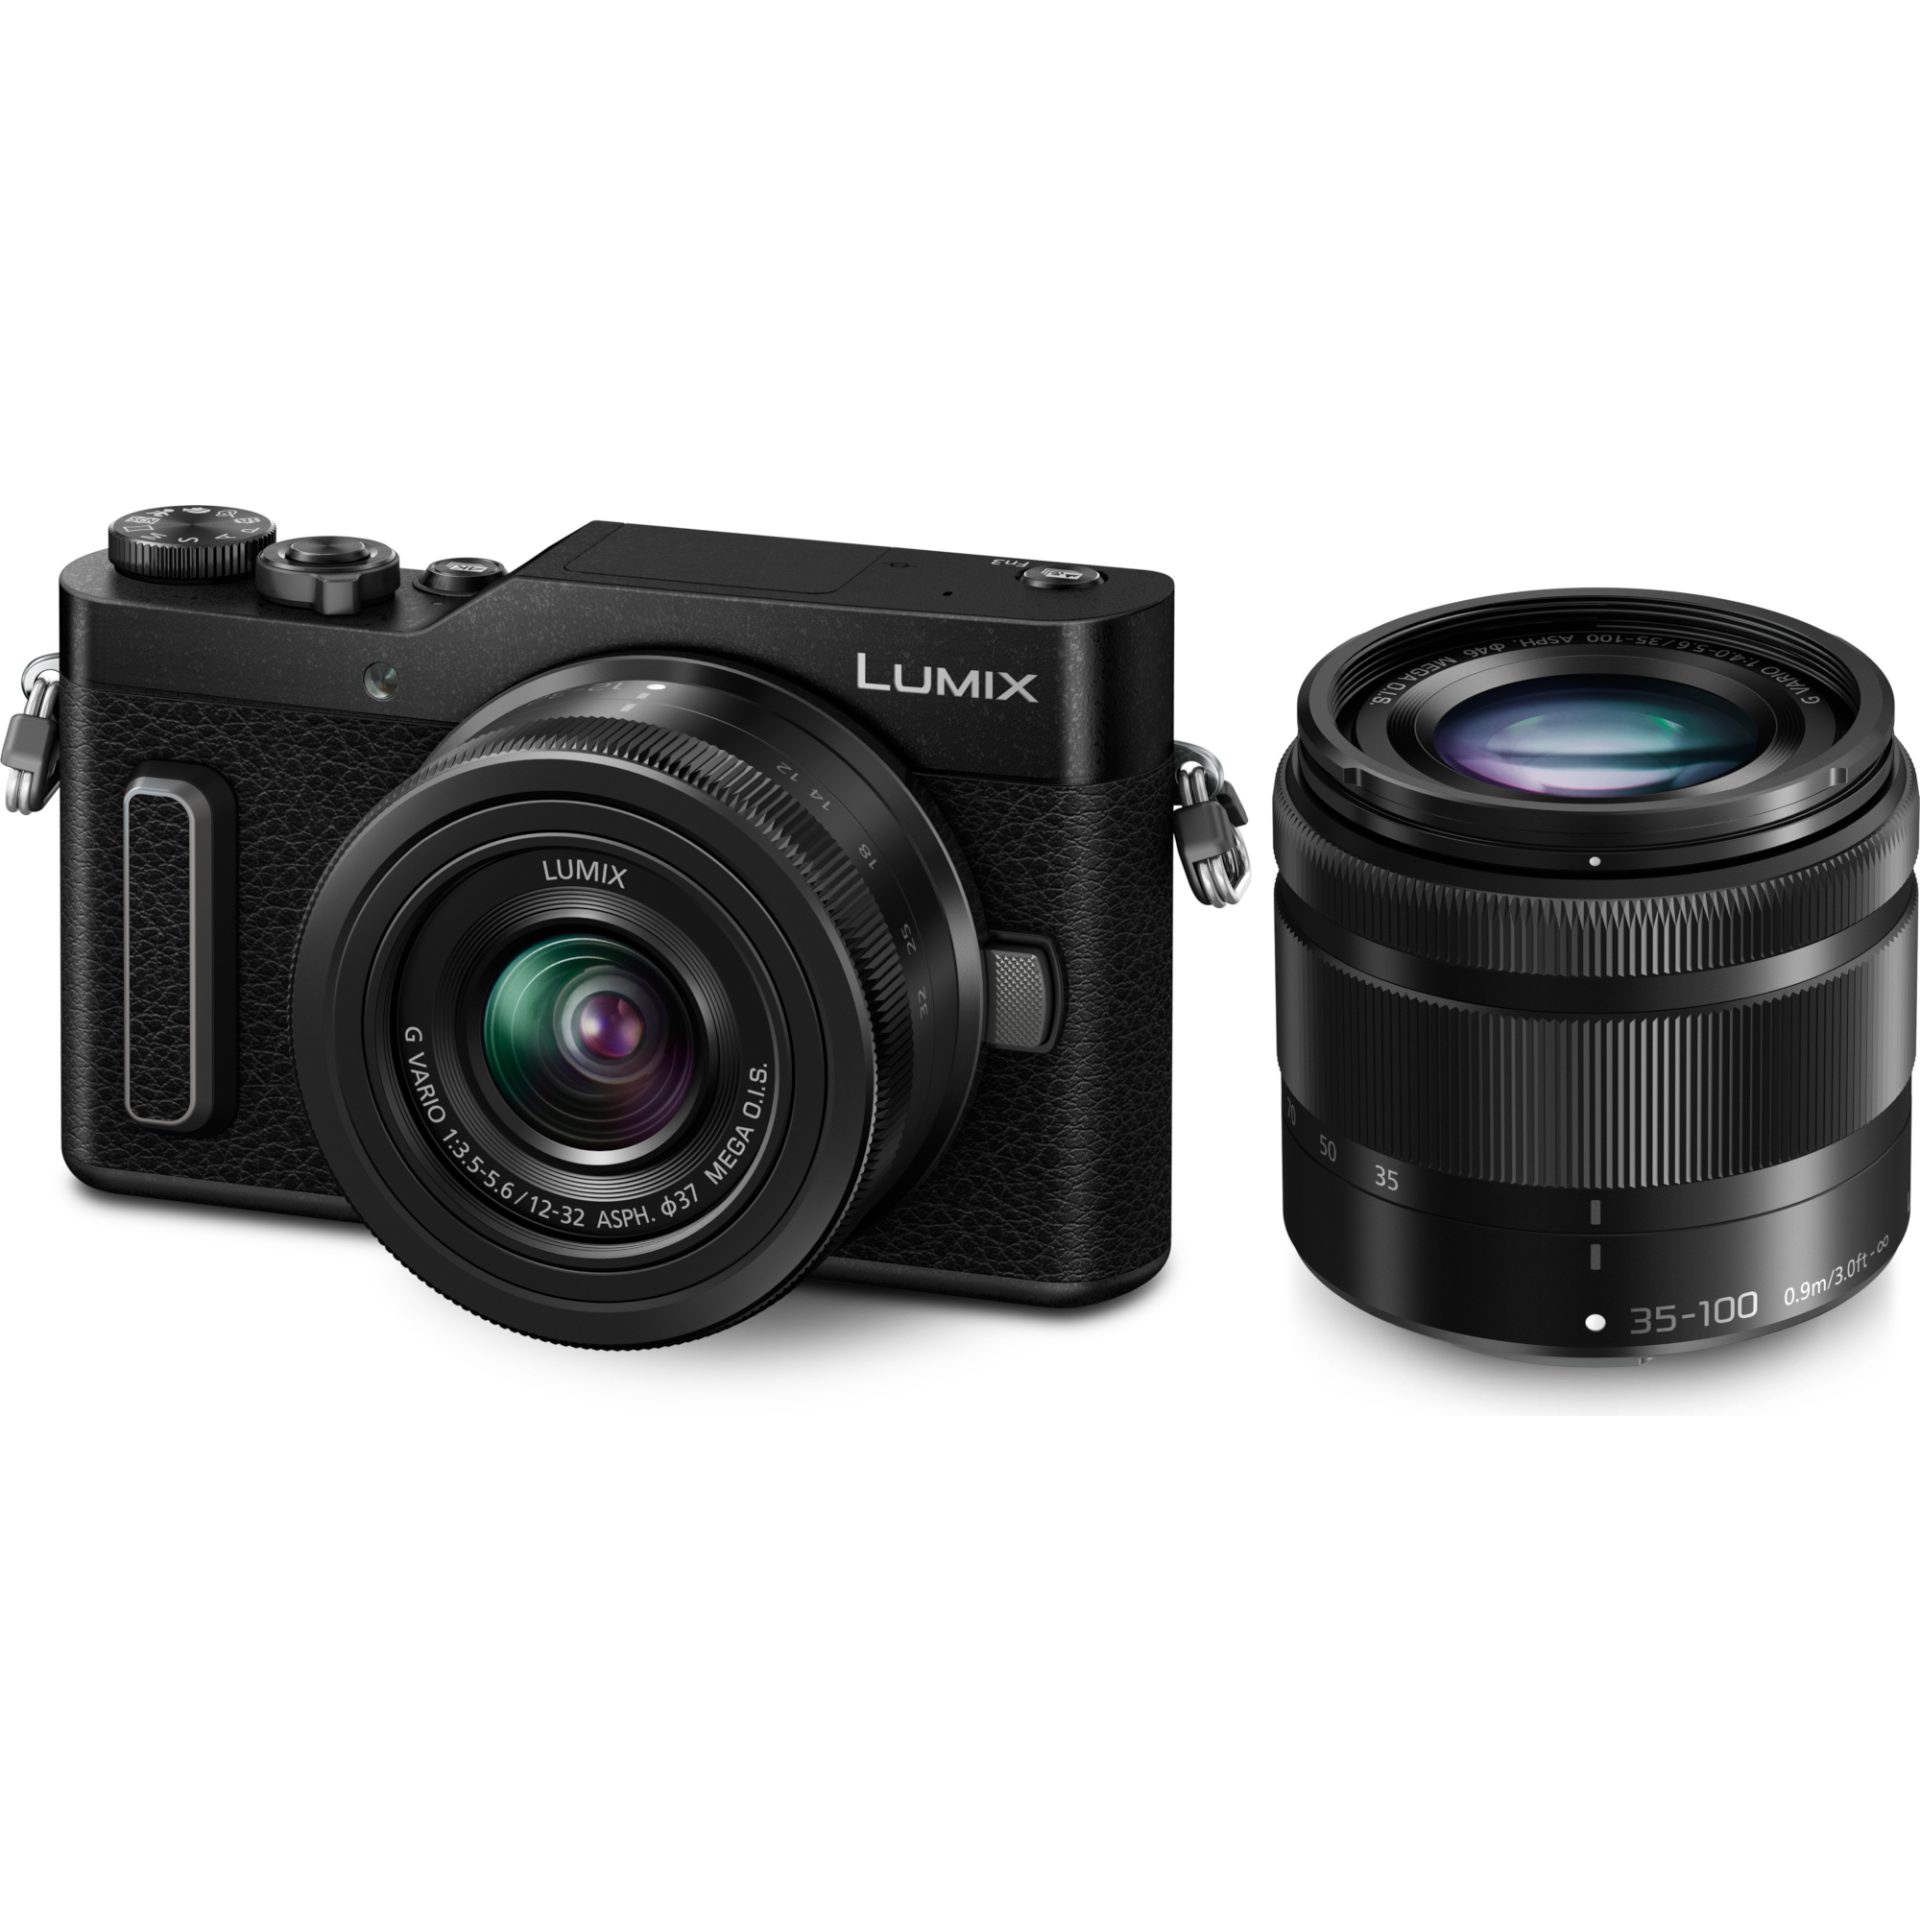 Panasonic DC-GX880W Lumix digitální fotoaparát pro blogery + H-FS12032 12-32mm, F3.5-5.6 + H-FS35100 35-100mm, F4.0-5.6 (4K fotografie, wi-fi), černá